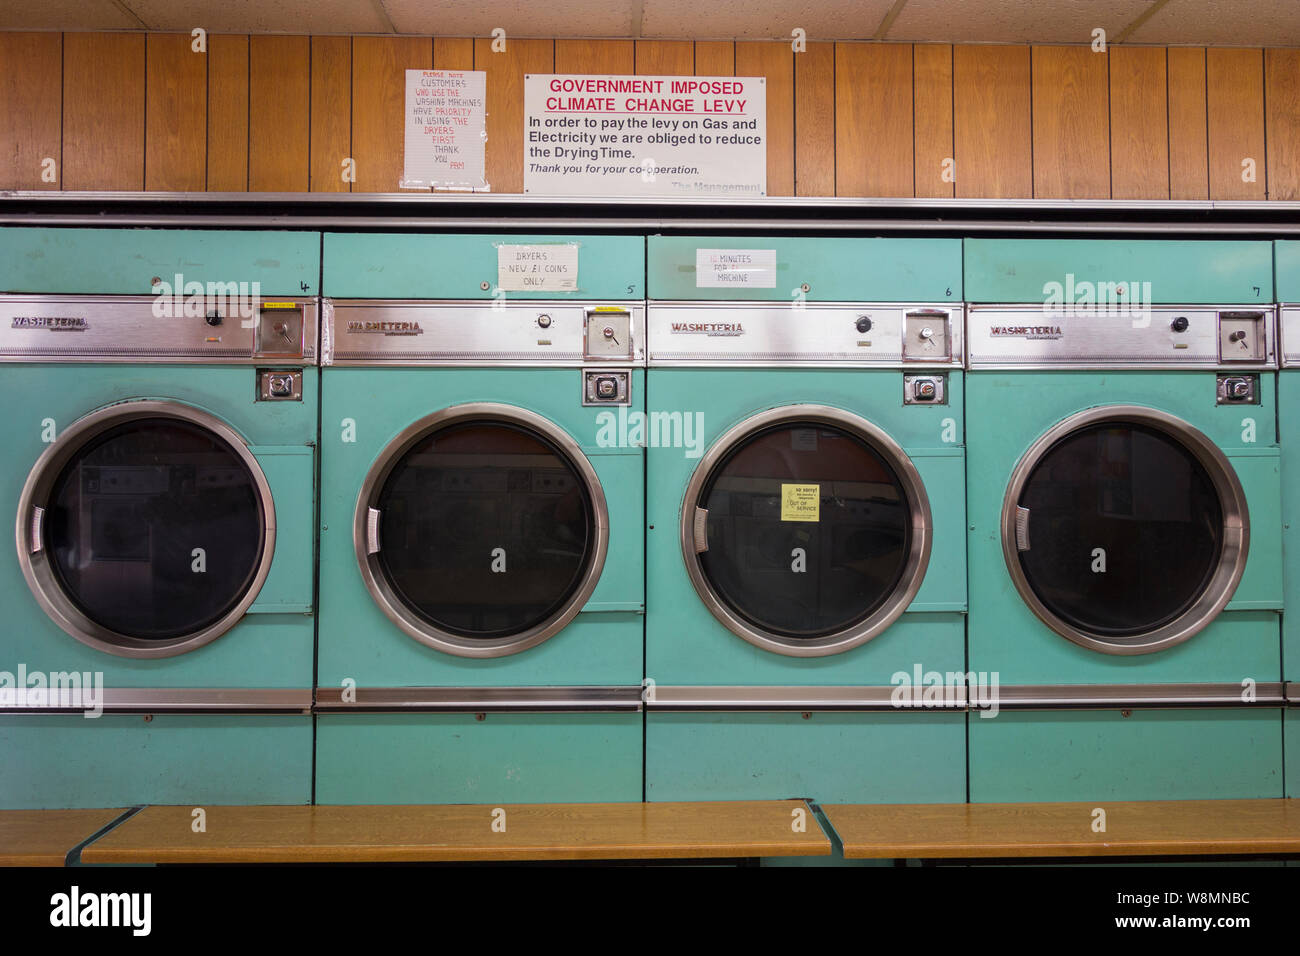 Climate Change Levy - Innenaufnahme von Waschmaschinen in einem Waschsalon, London, England, Großbritannien Stockfoto